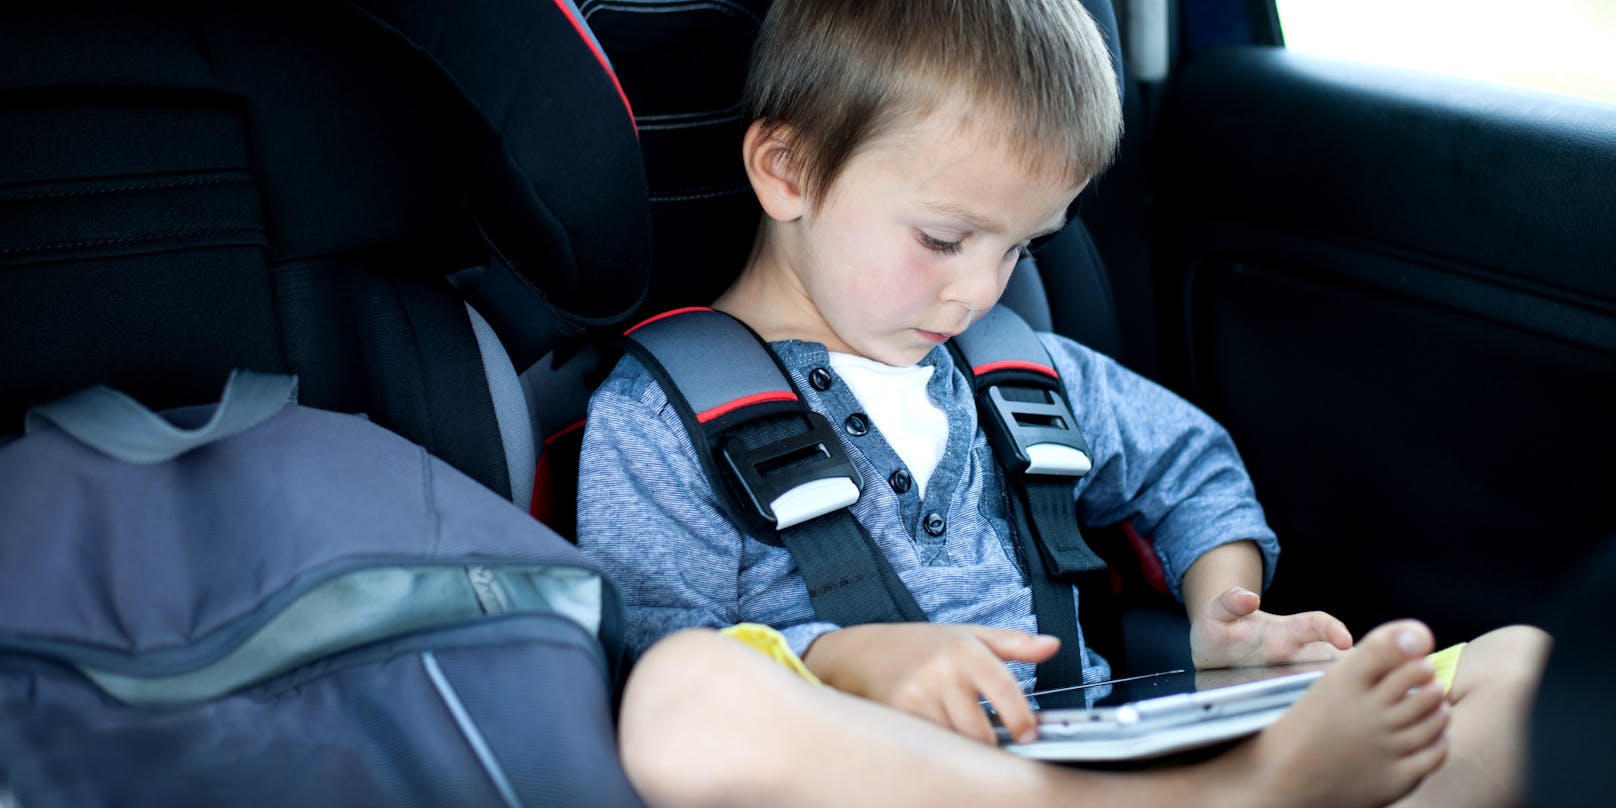 Das Kleinkind saß offenbar stundenlang im Auto und spielte mit einem Handy (Symbolfoto)